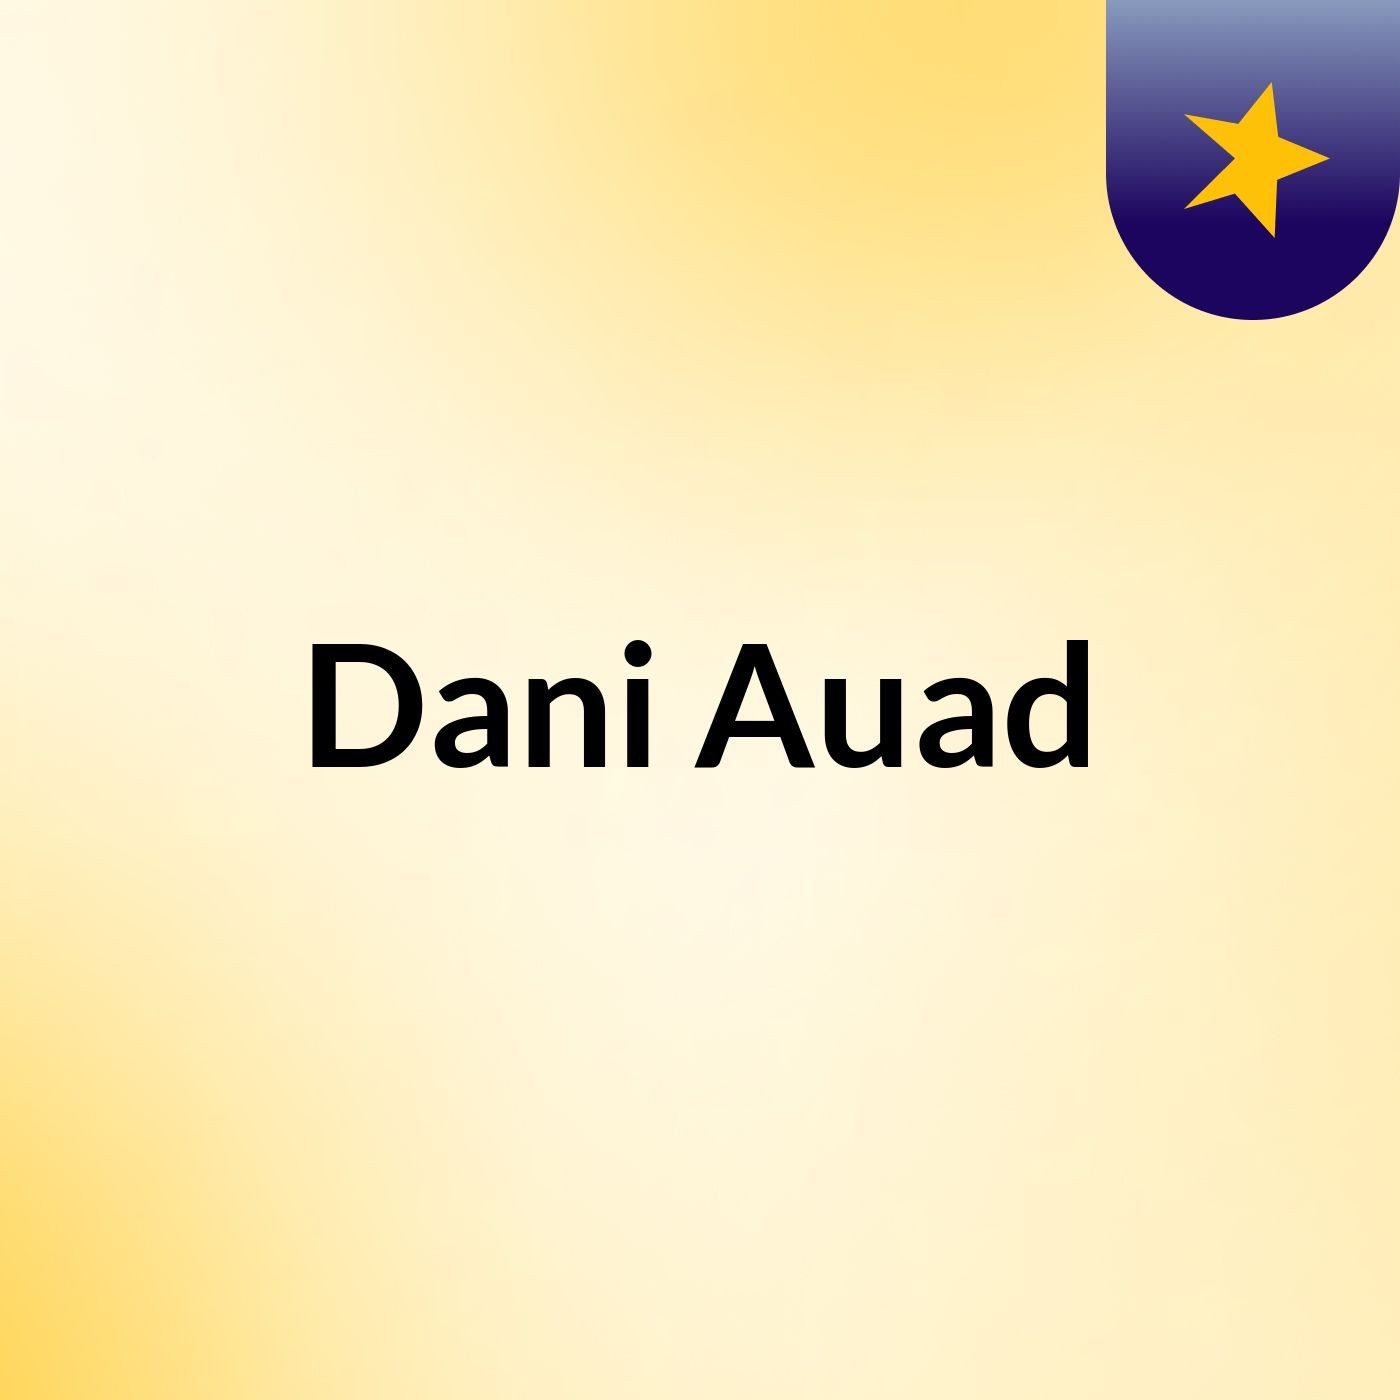 Dani Auad